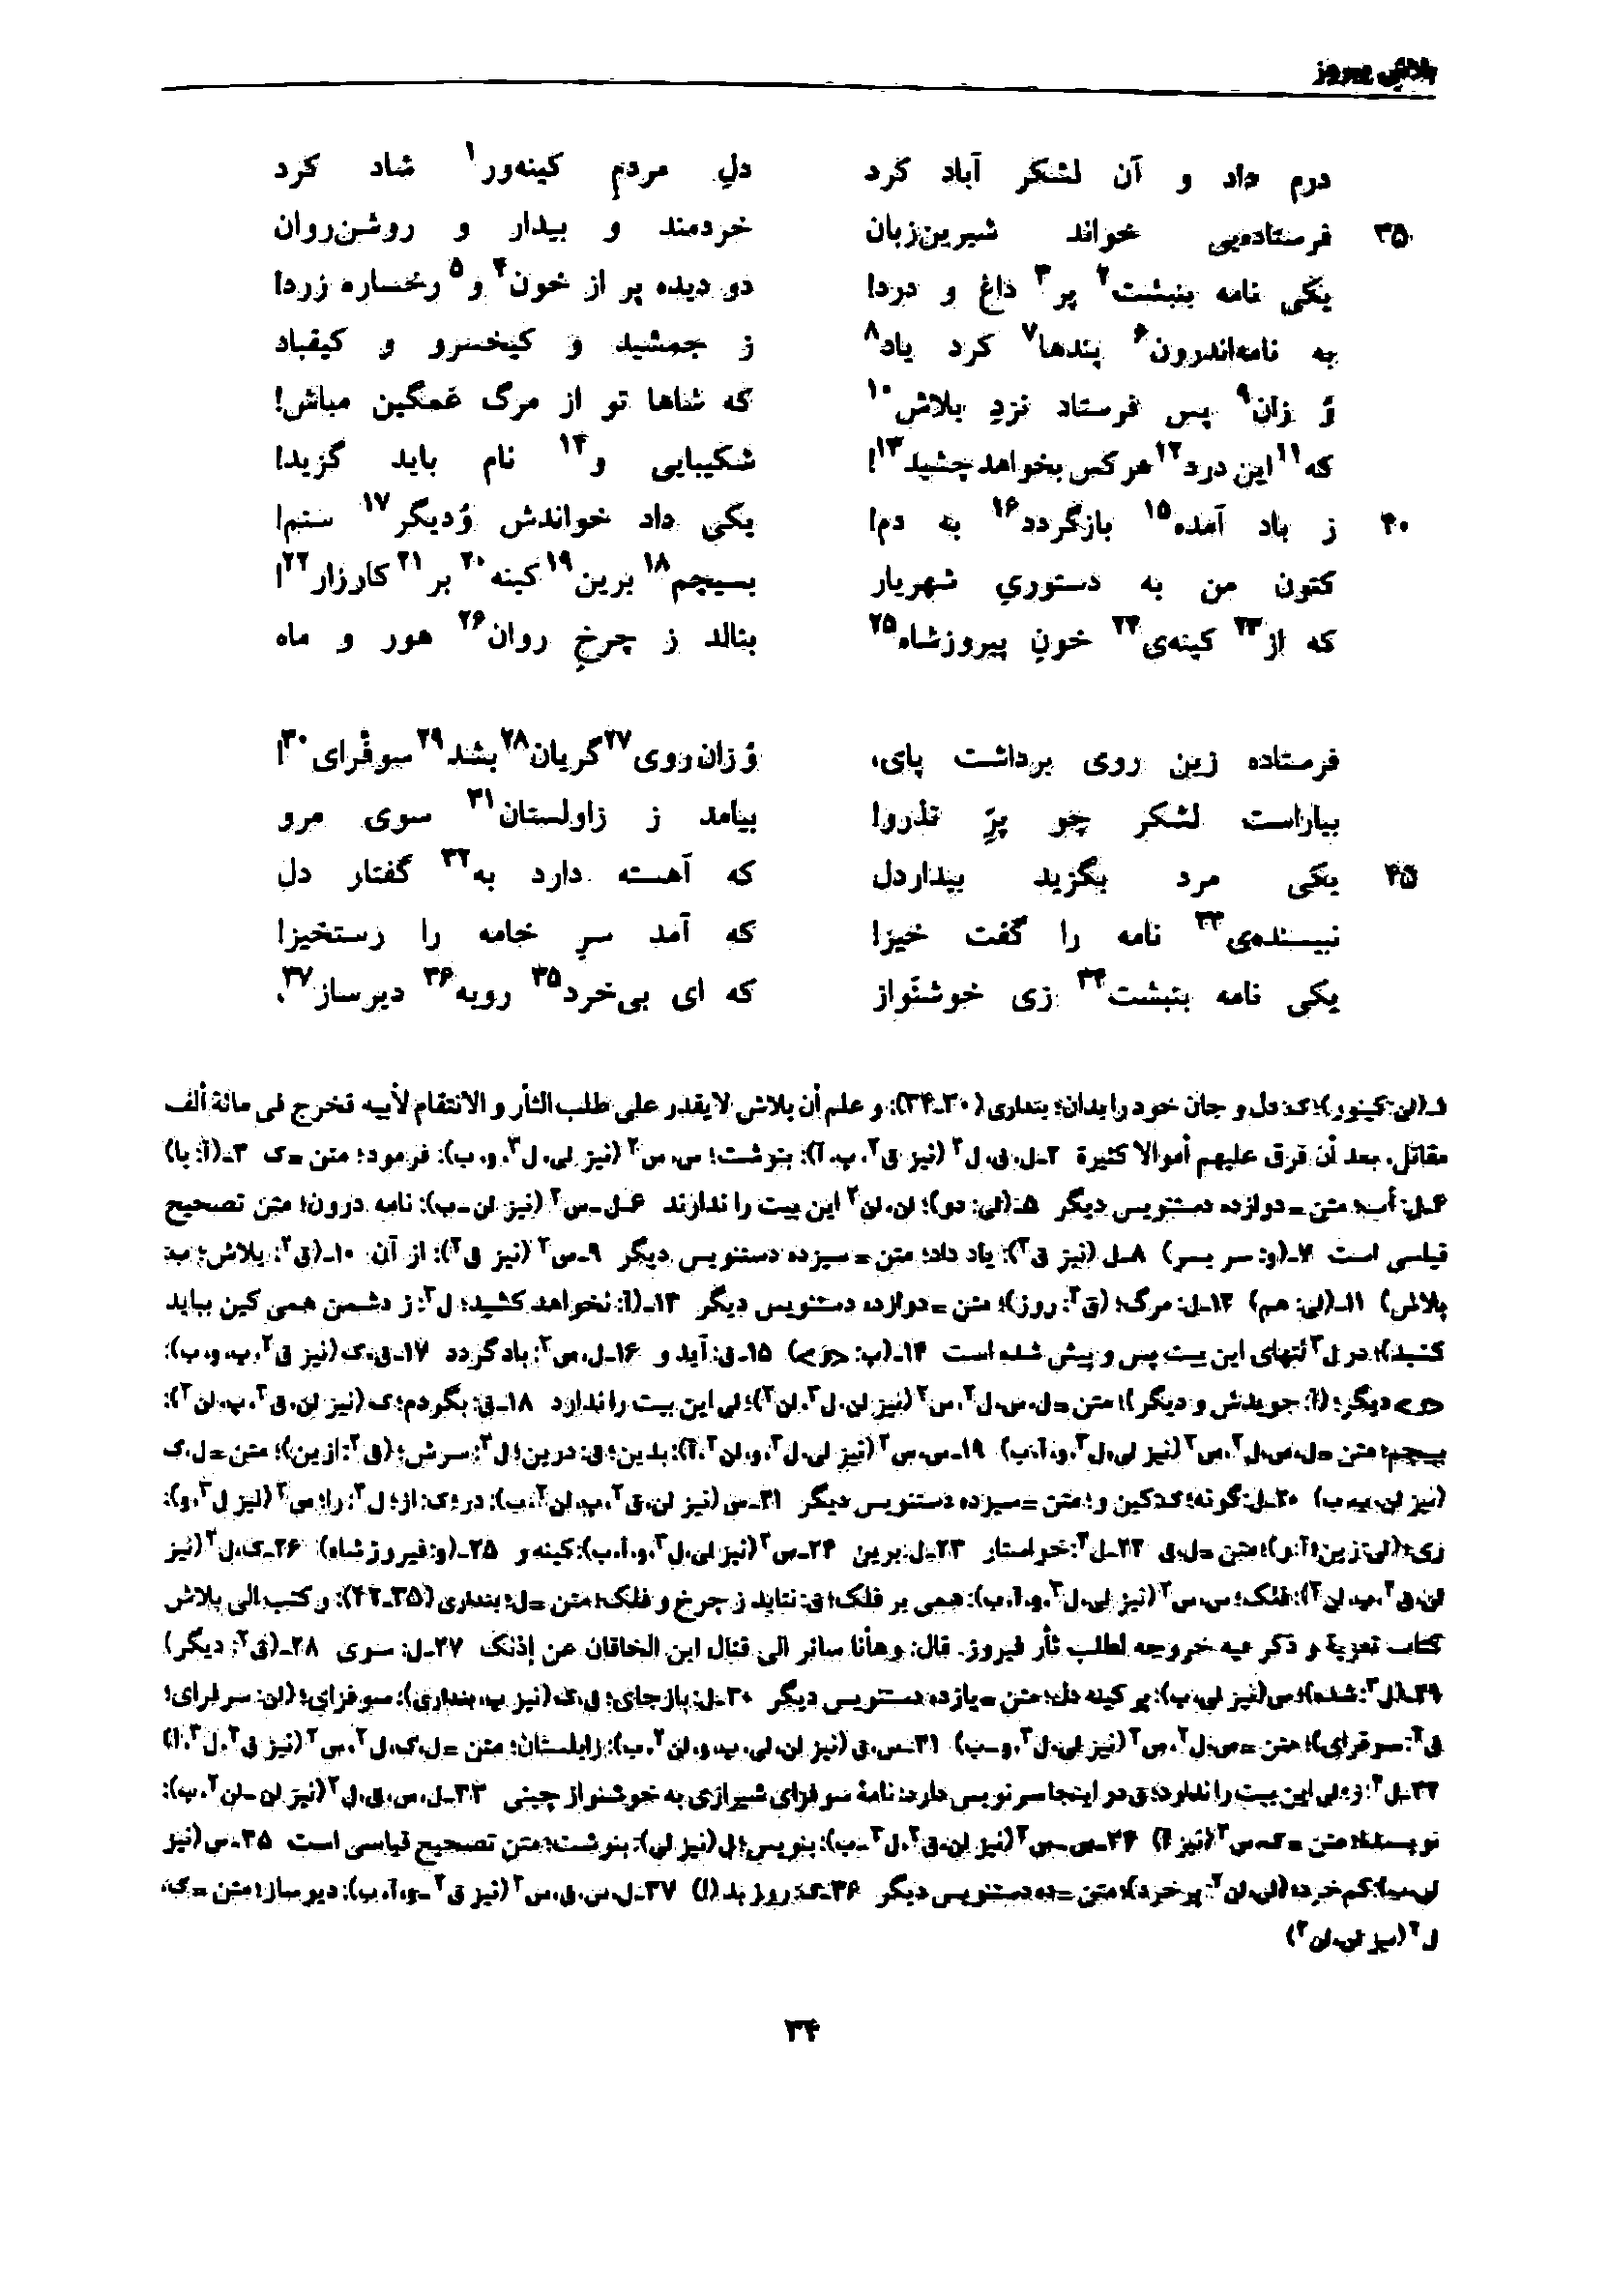 vol. 7, p. 34